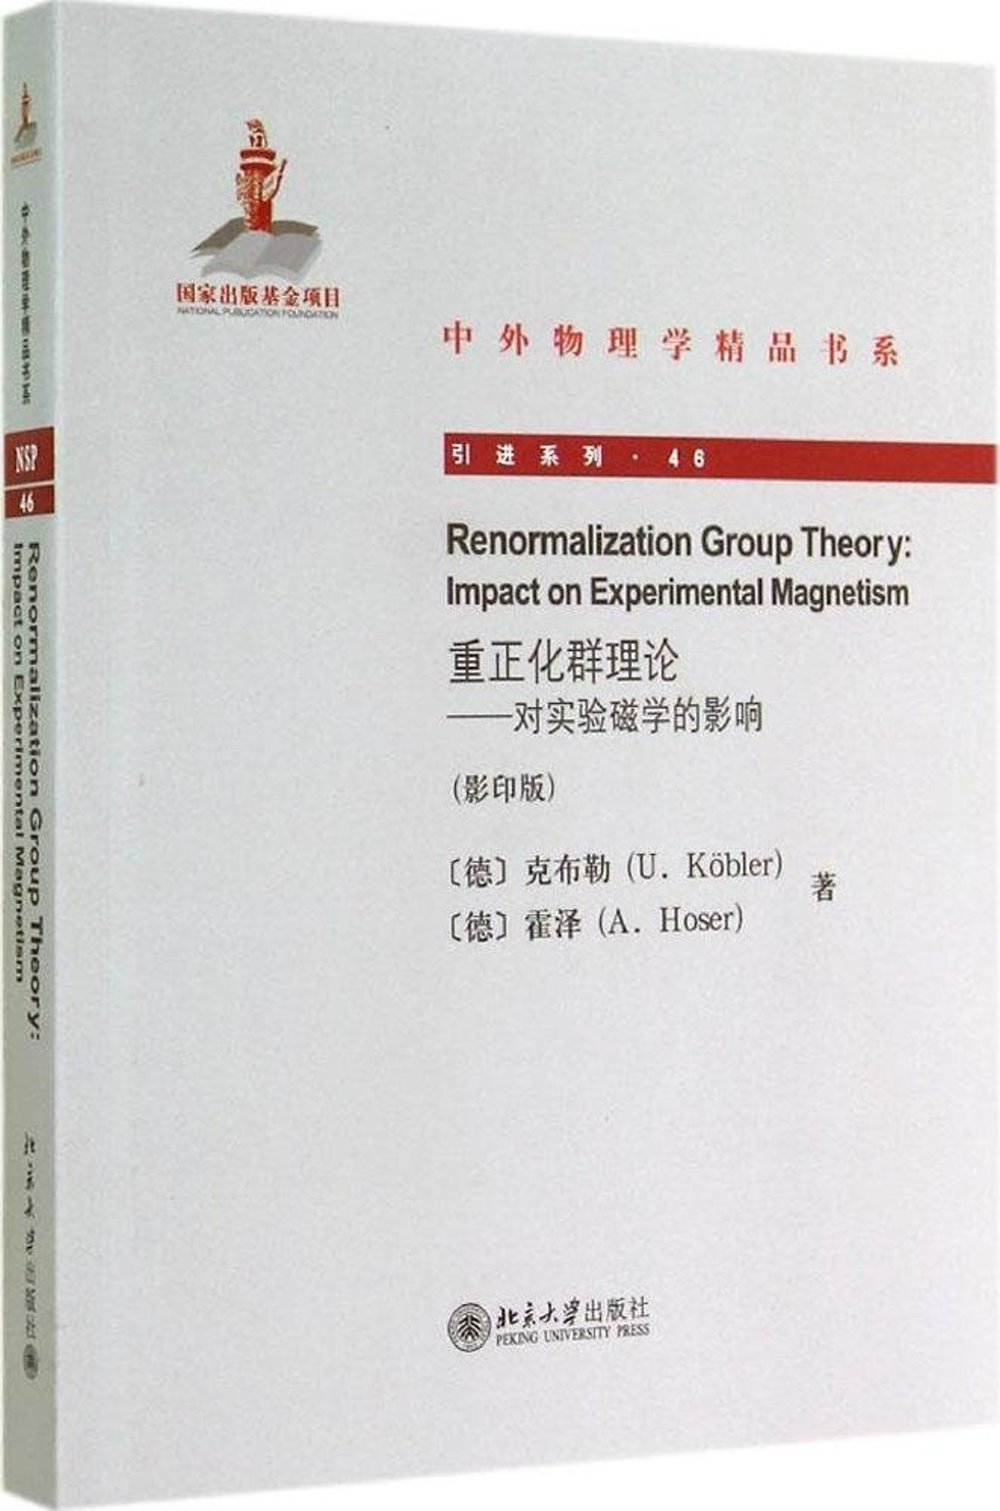 重正化群理論：對實驗磁學的影響 英文 影印版